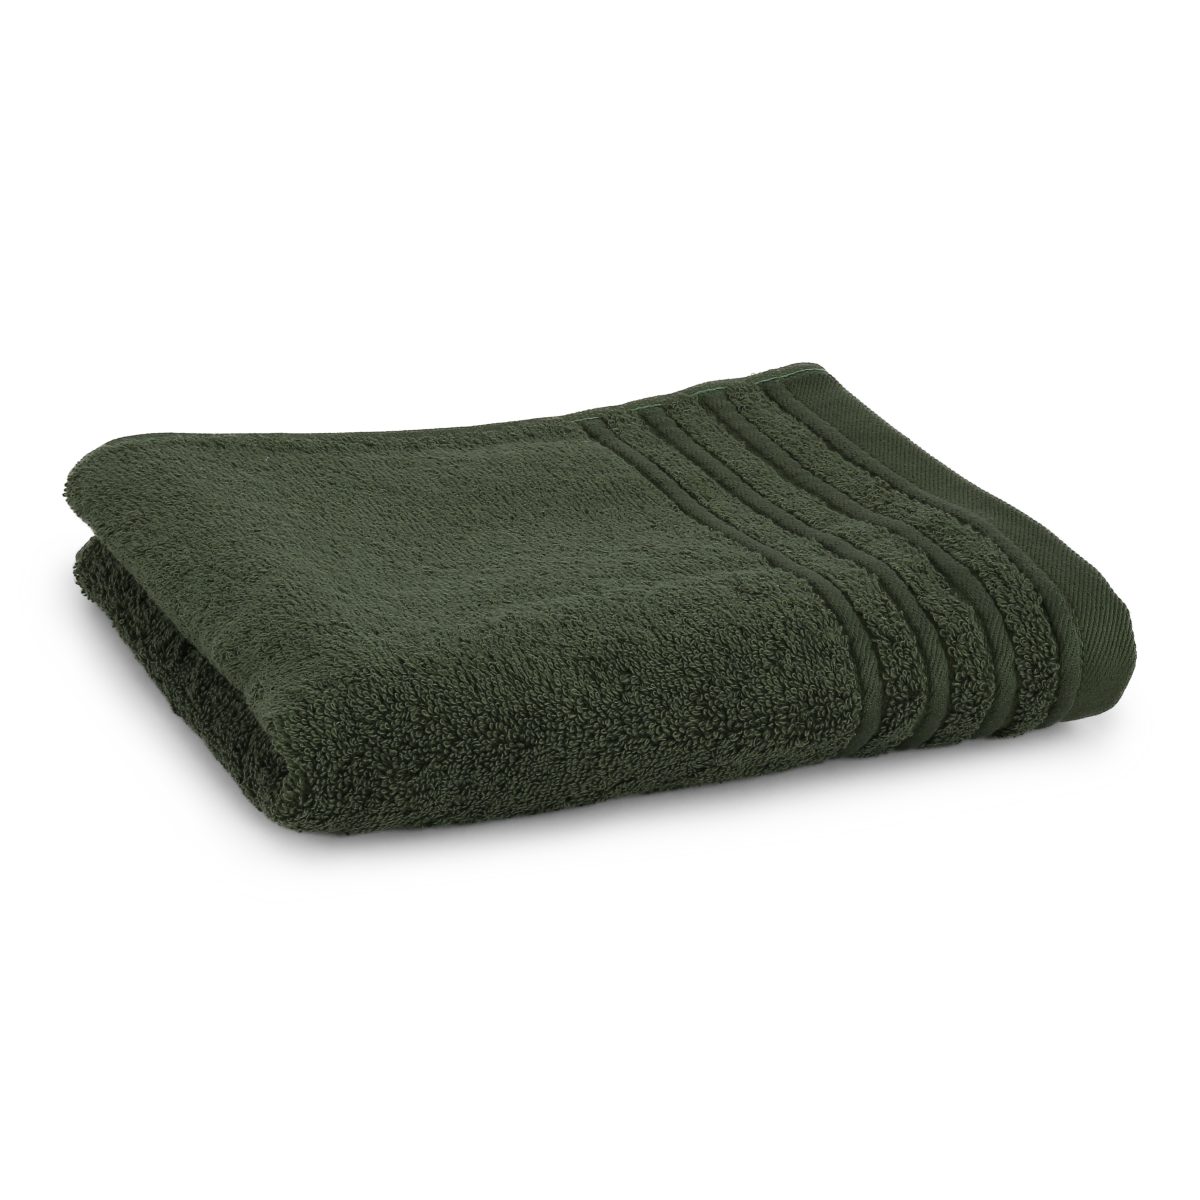 Håndklæde med broderet navn - mørk grøn